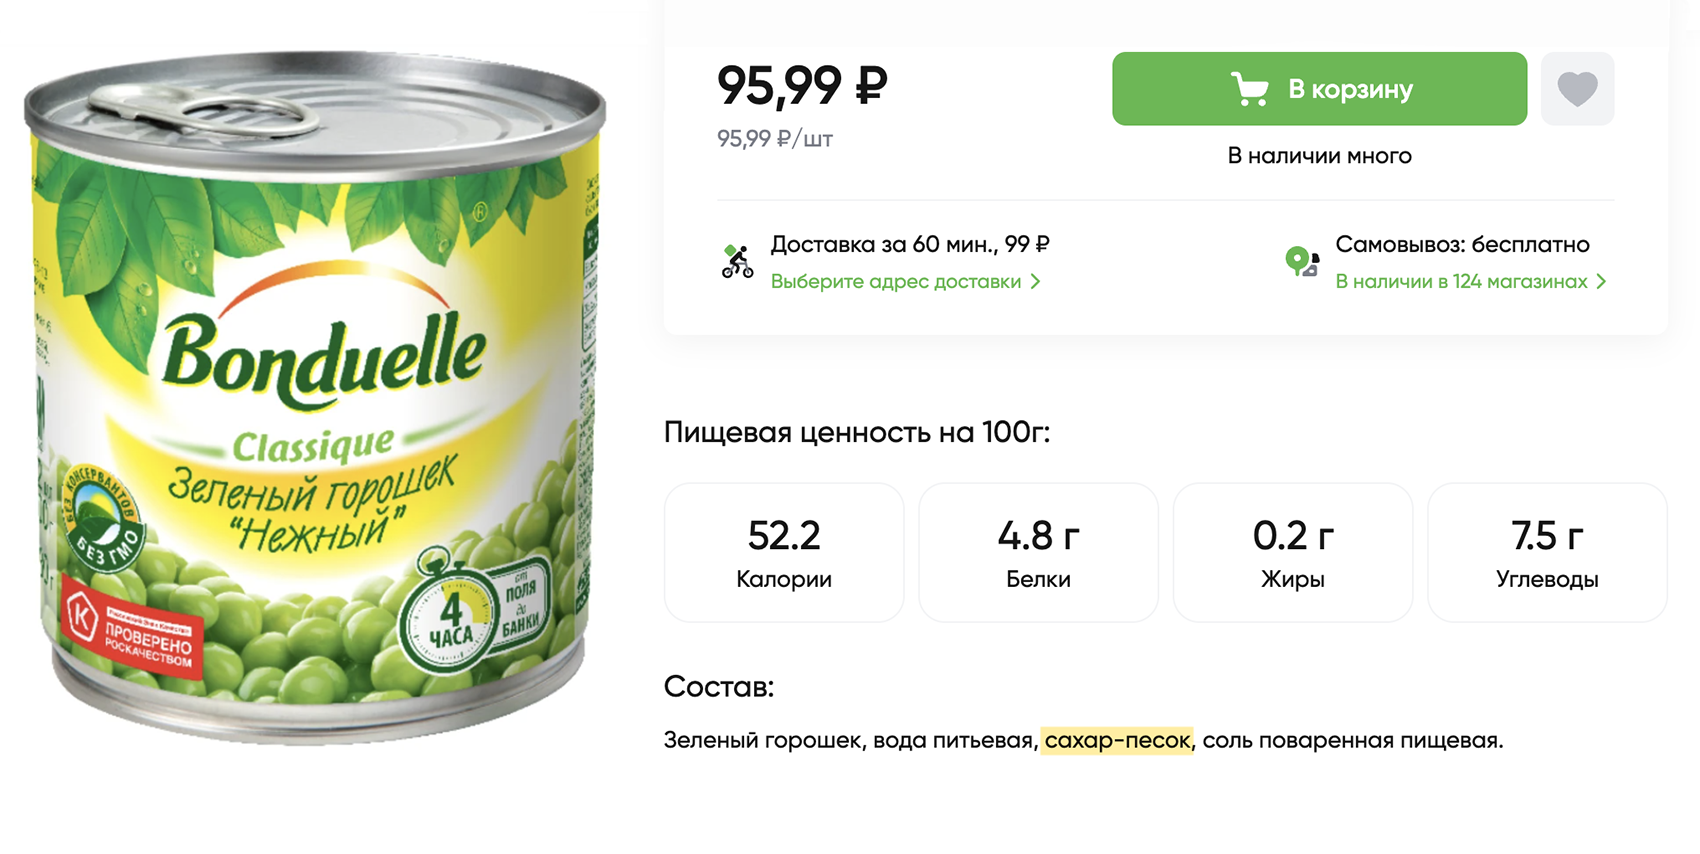 Сахар есть и в консервированном зеленом горошке. Источник: perekrestok.ru